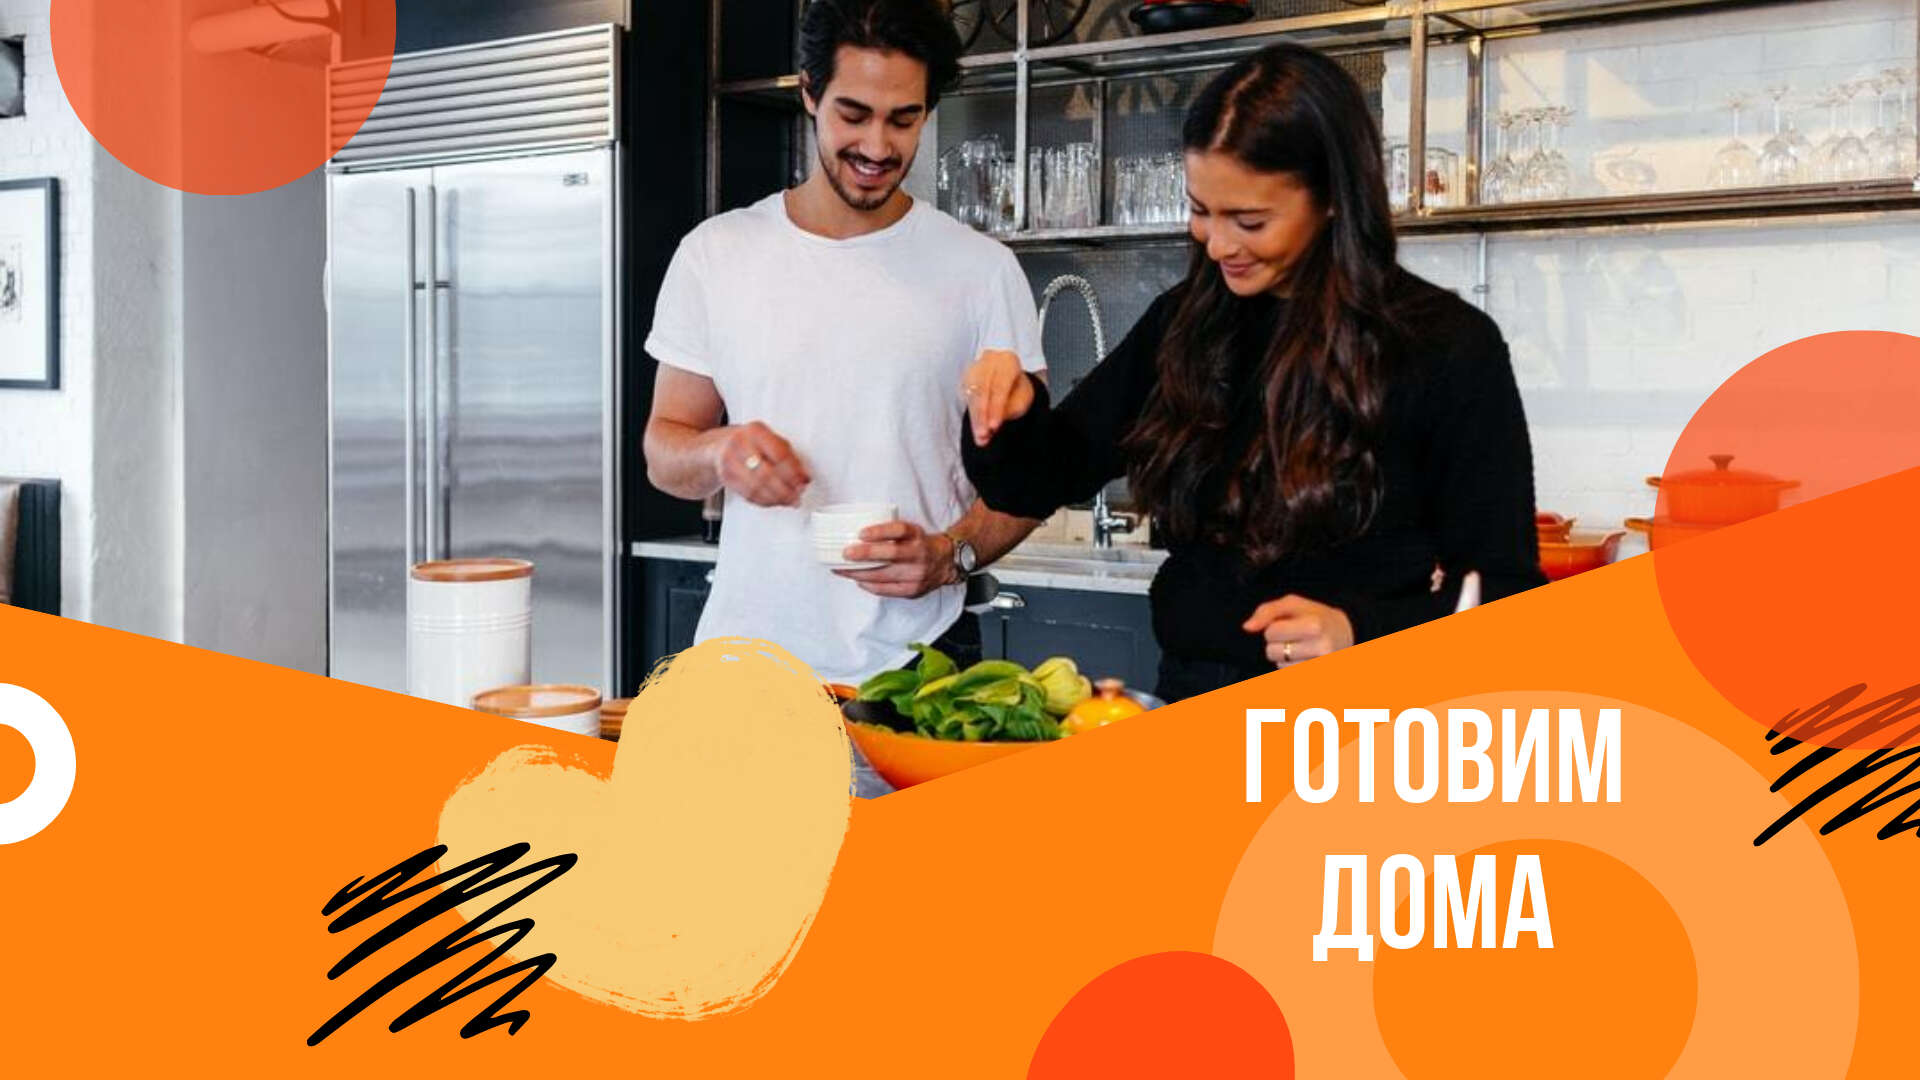 Домашняя кухня в ярком оранжевом посте для сообщества в соцсетях милая молодая пара готовит вместе на кухне